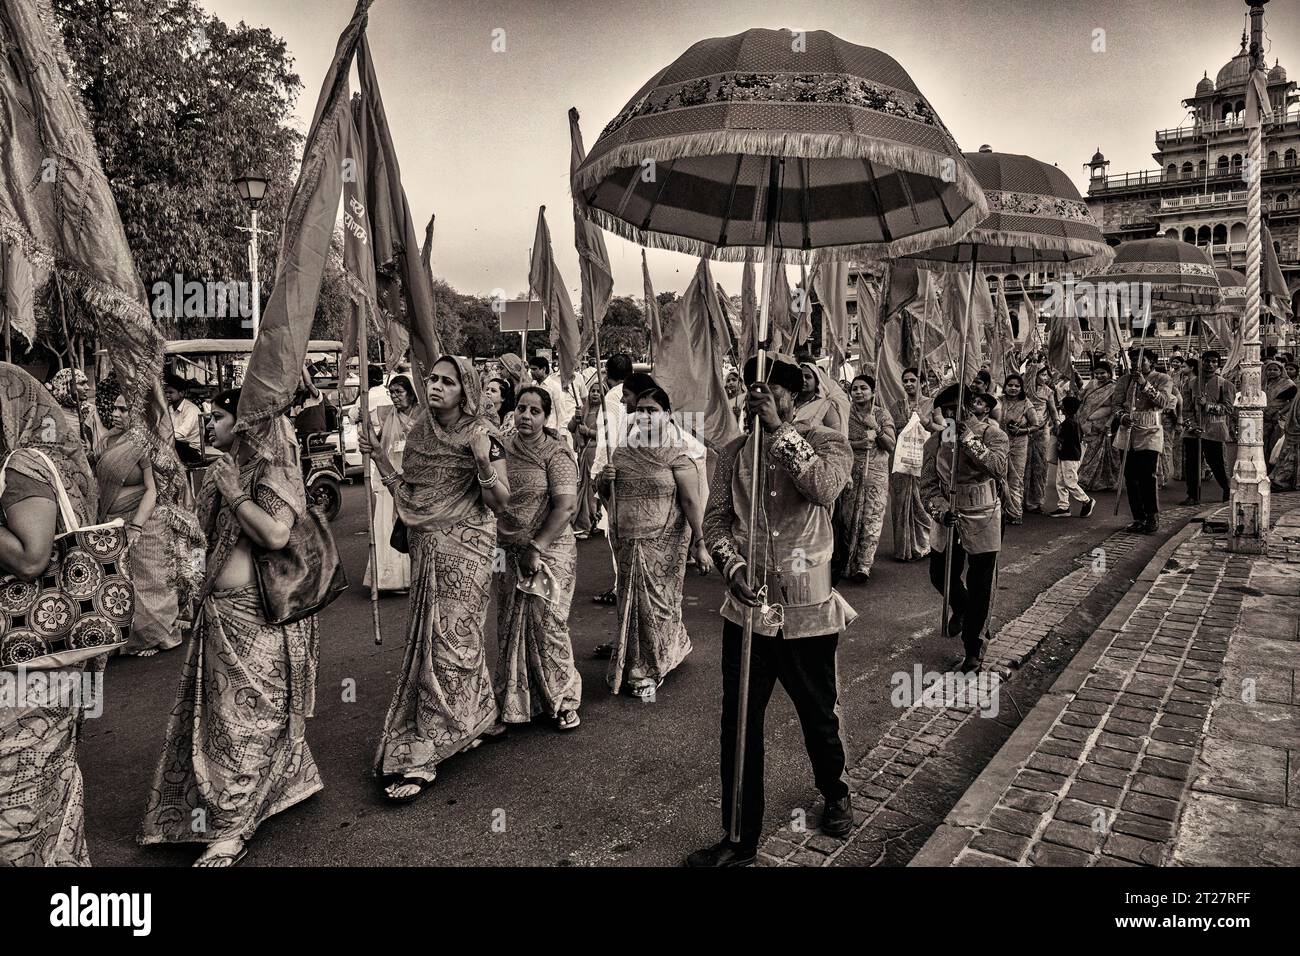 Processione religiosa che si svolge lungo la strada rami di fronte all'Albert Hall Museum di Jaipur Foto Stock